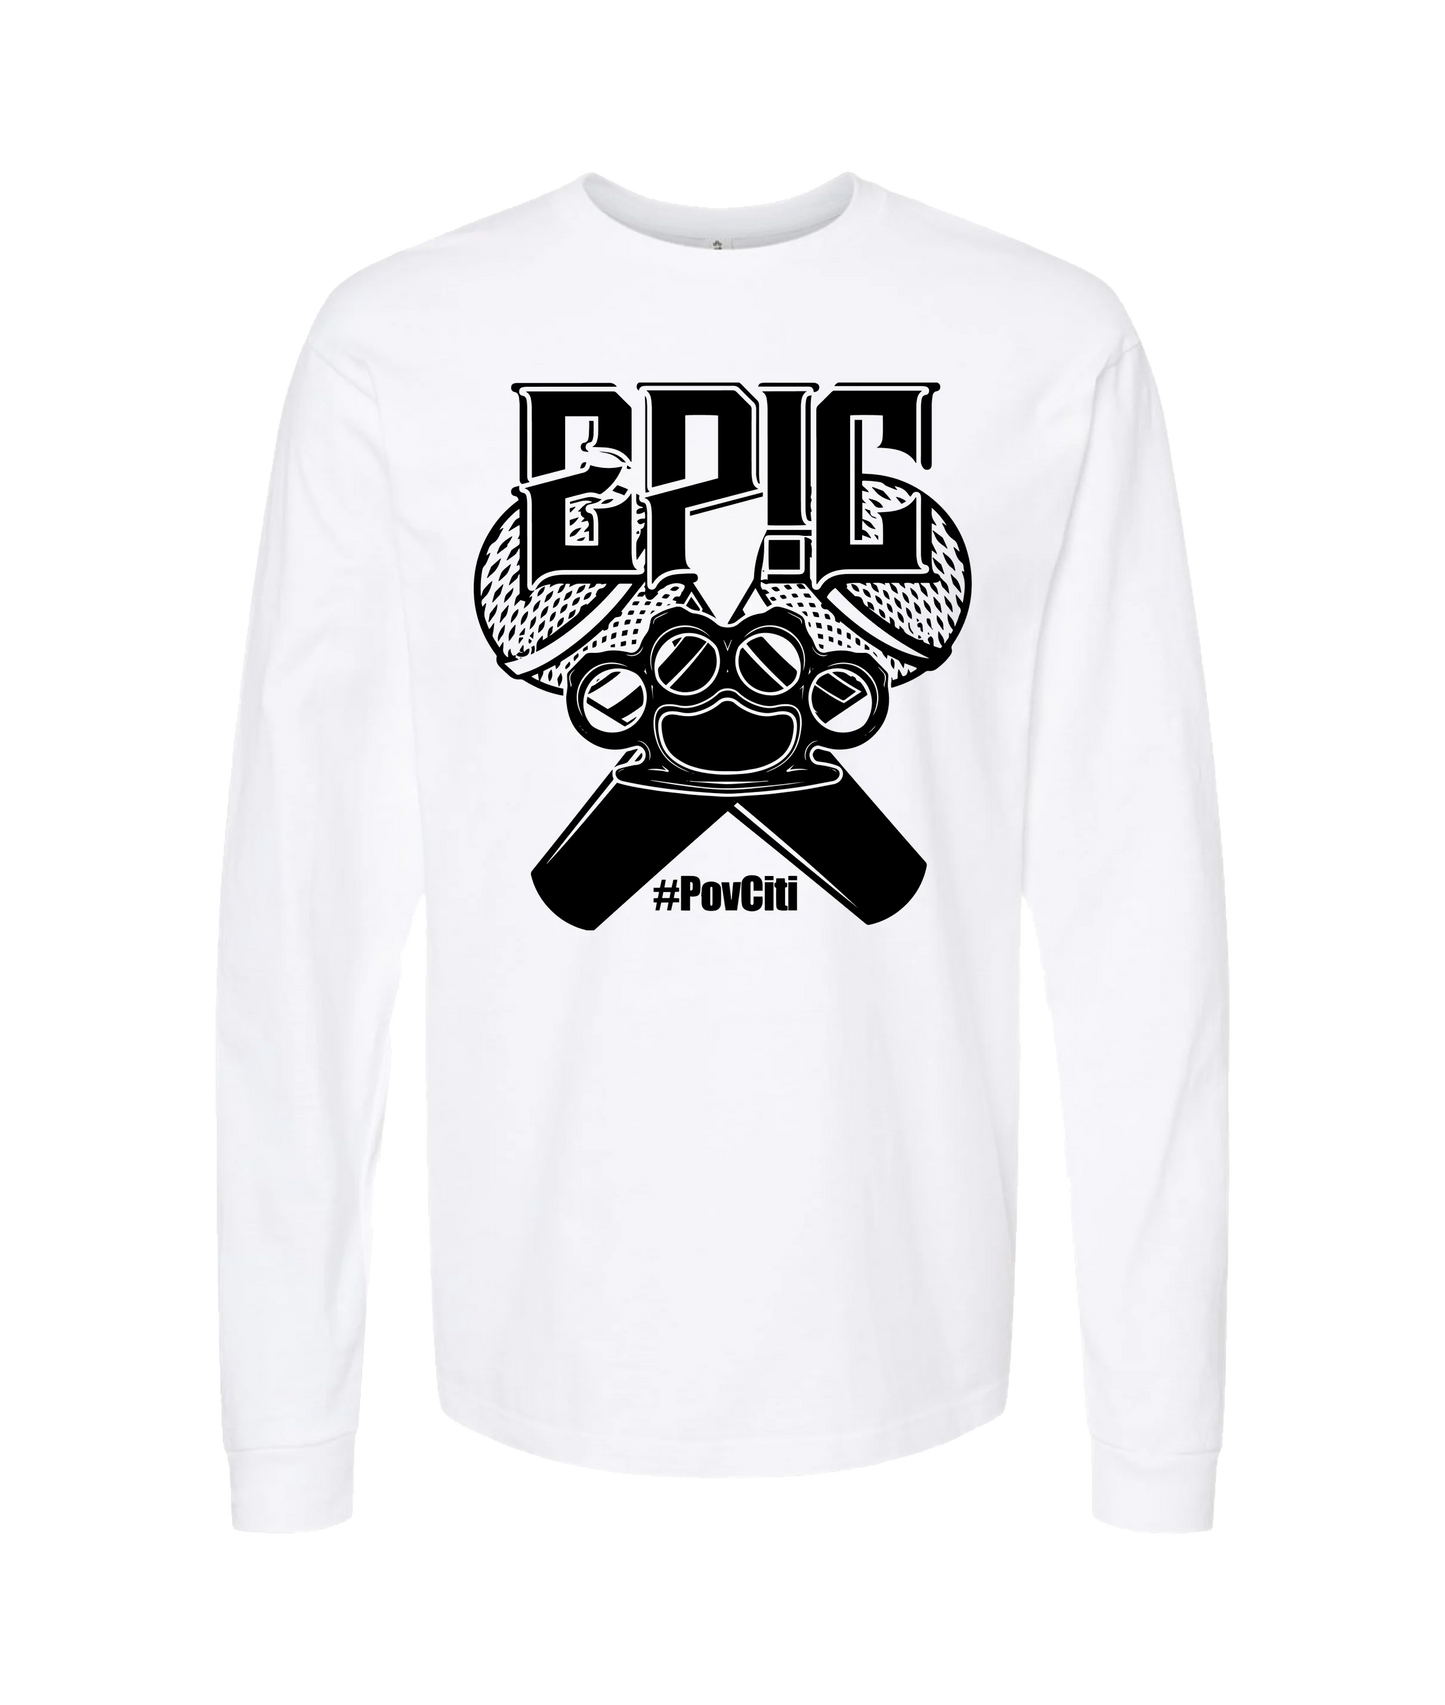 Ep!c of PovCiti - Epic #PovCiti - White Long Sleeve T